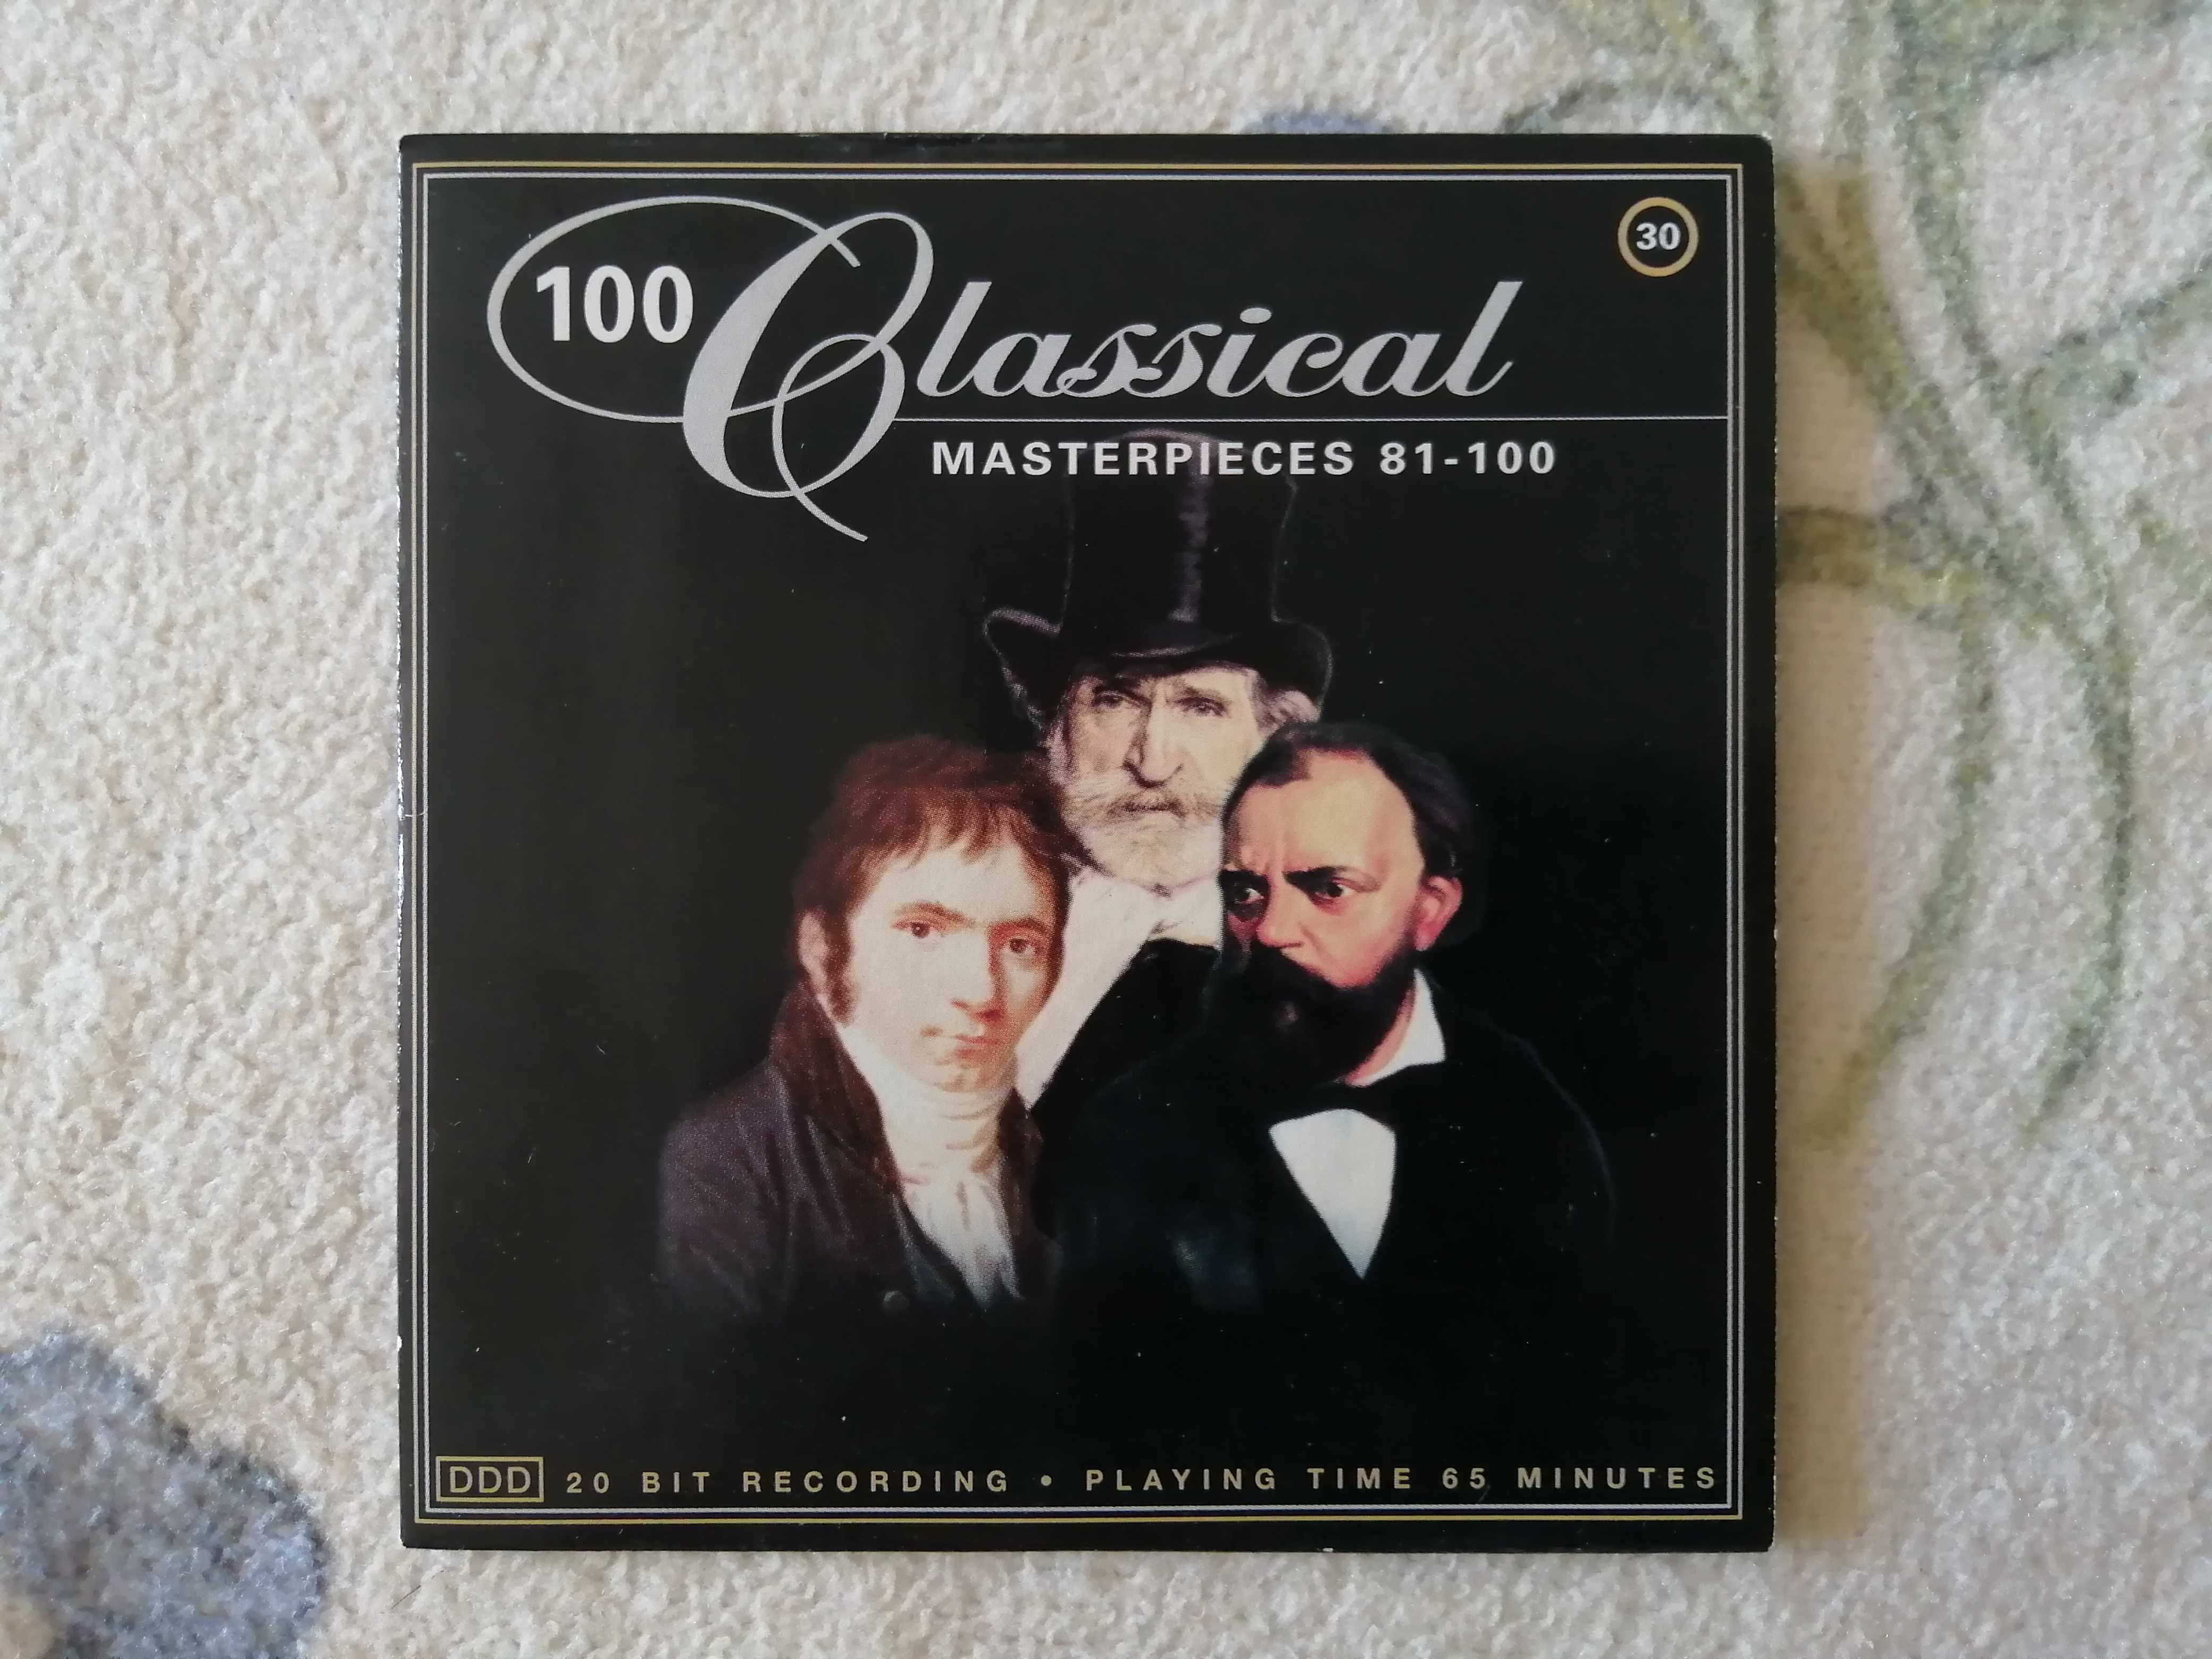 Vand 5 CD-uri muzica clasica "Classical Masterpieces"